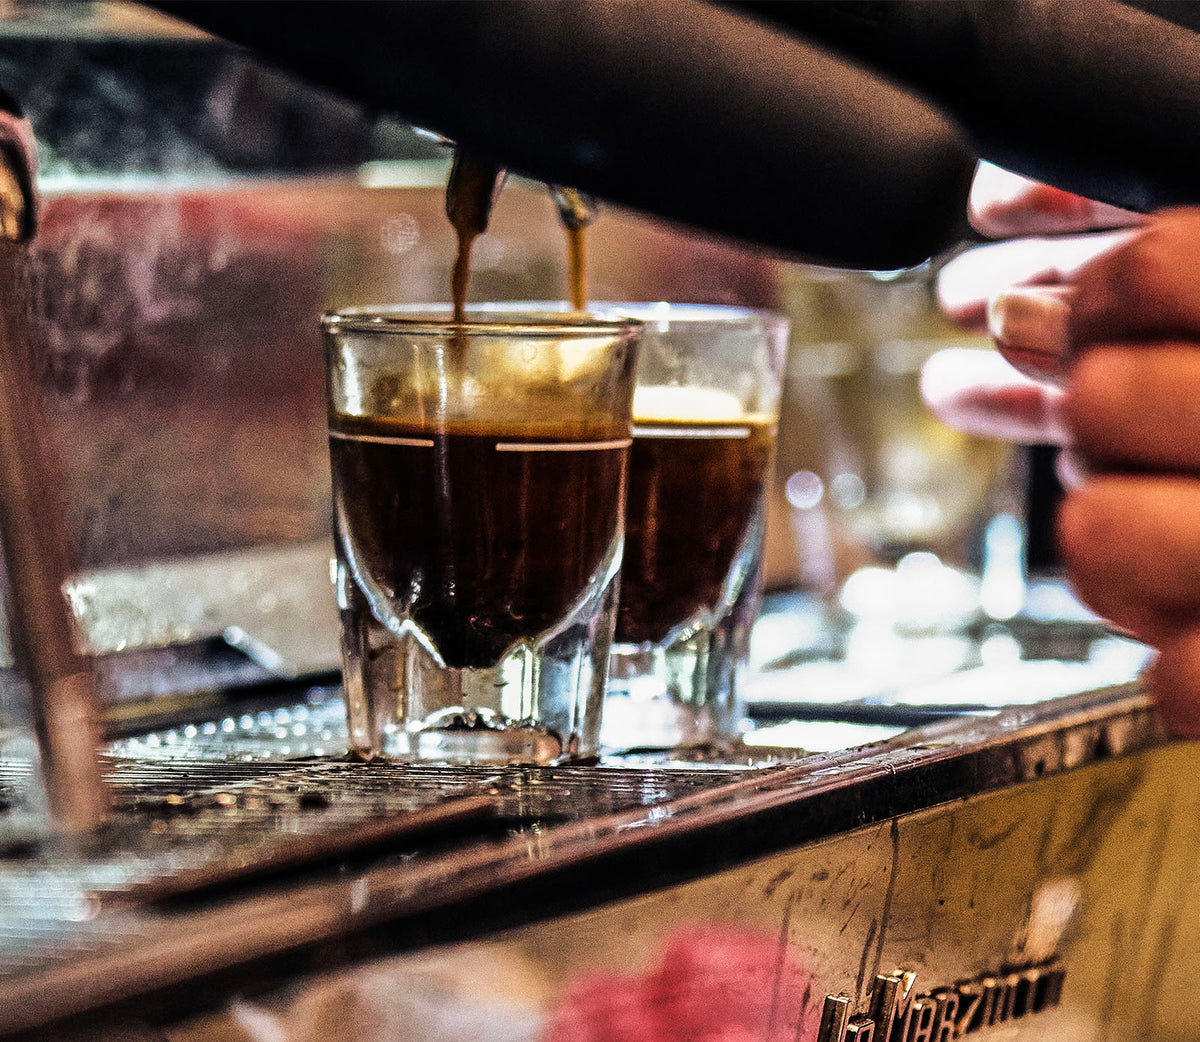 Nordstrom debut espresso blend